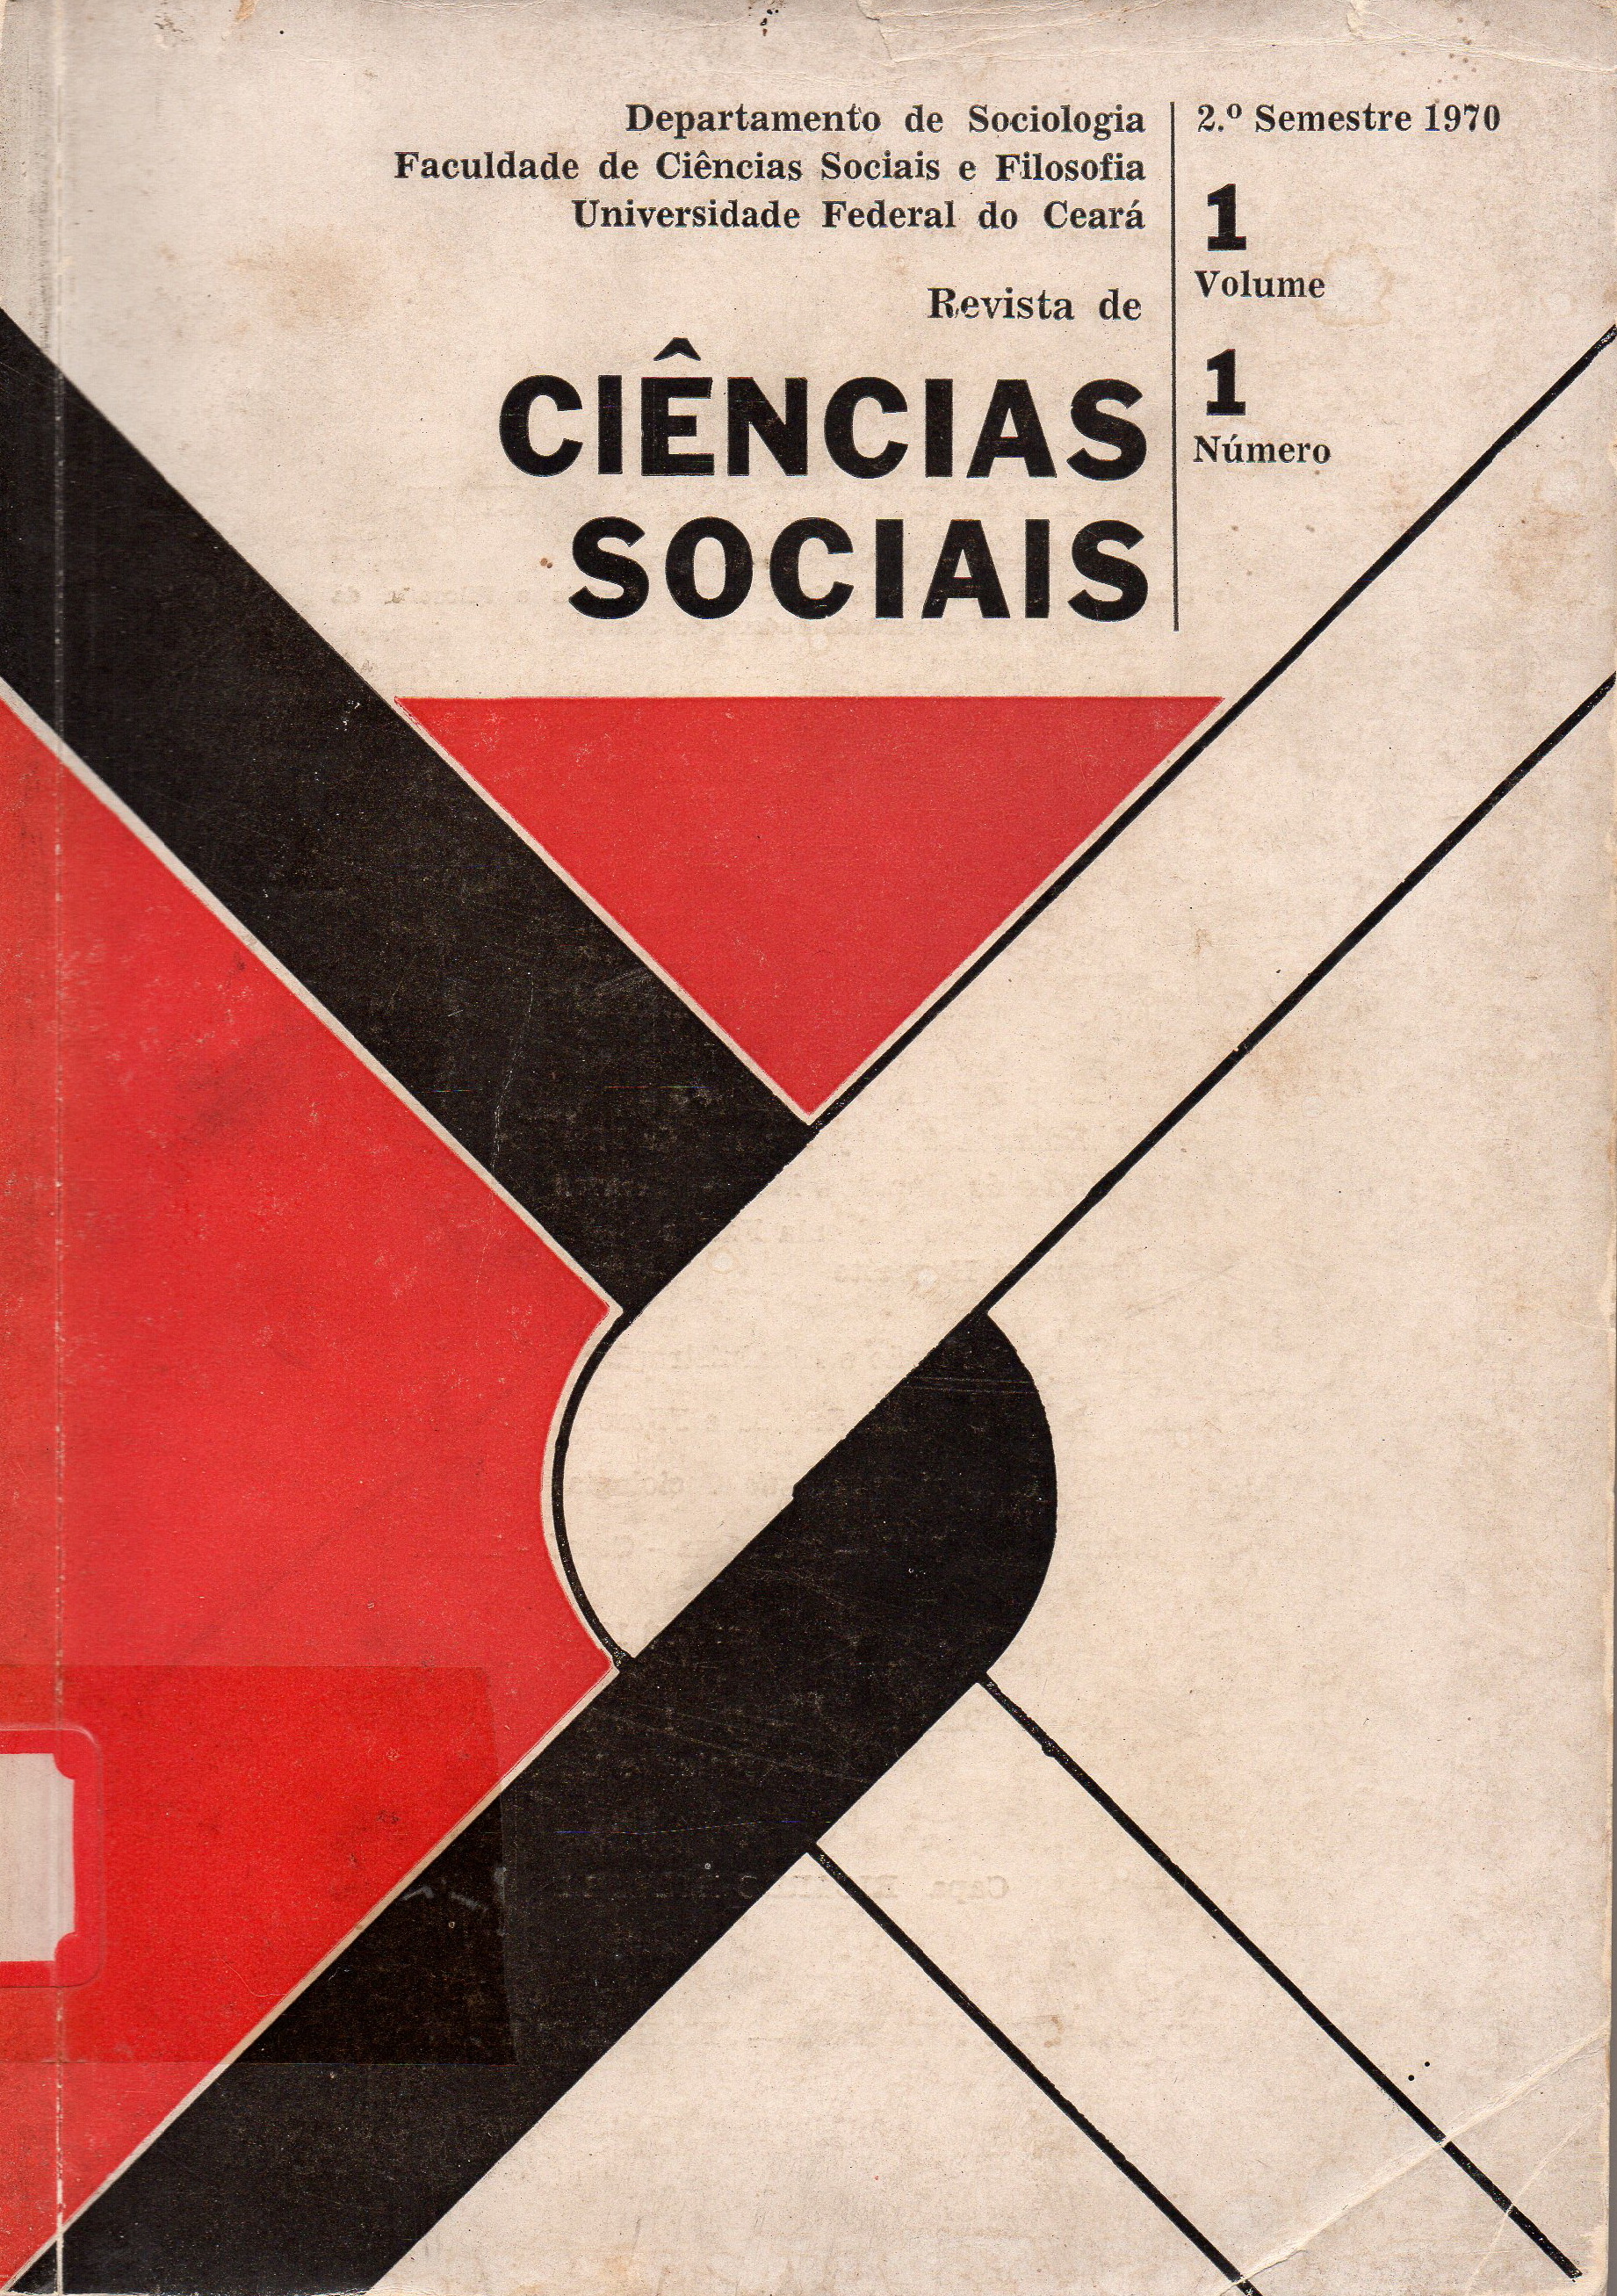 					View Vol. 1 No. 1 (1970): Vol. 1 da Revista de Ciências Sociais
				